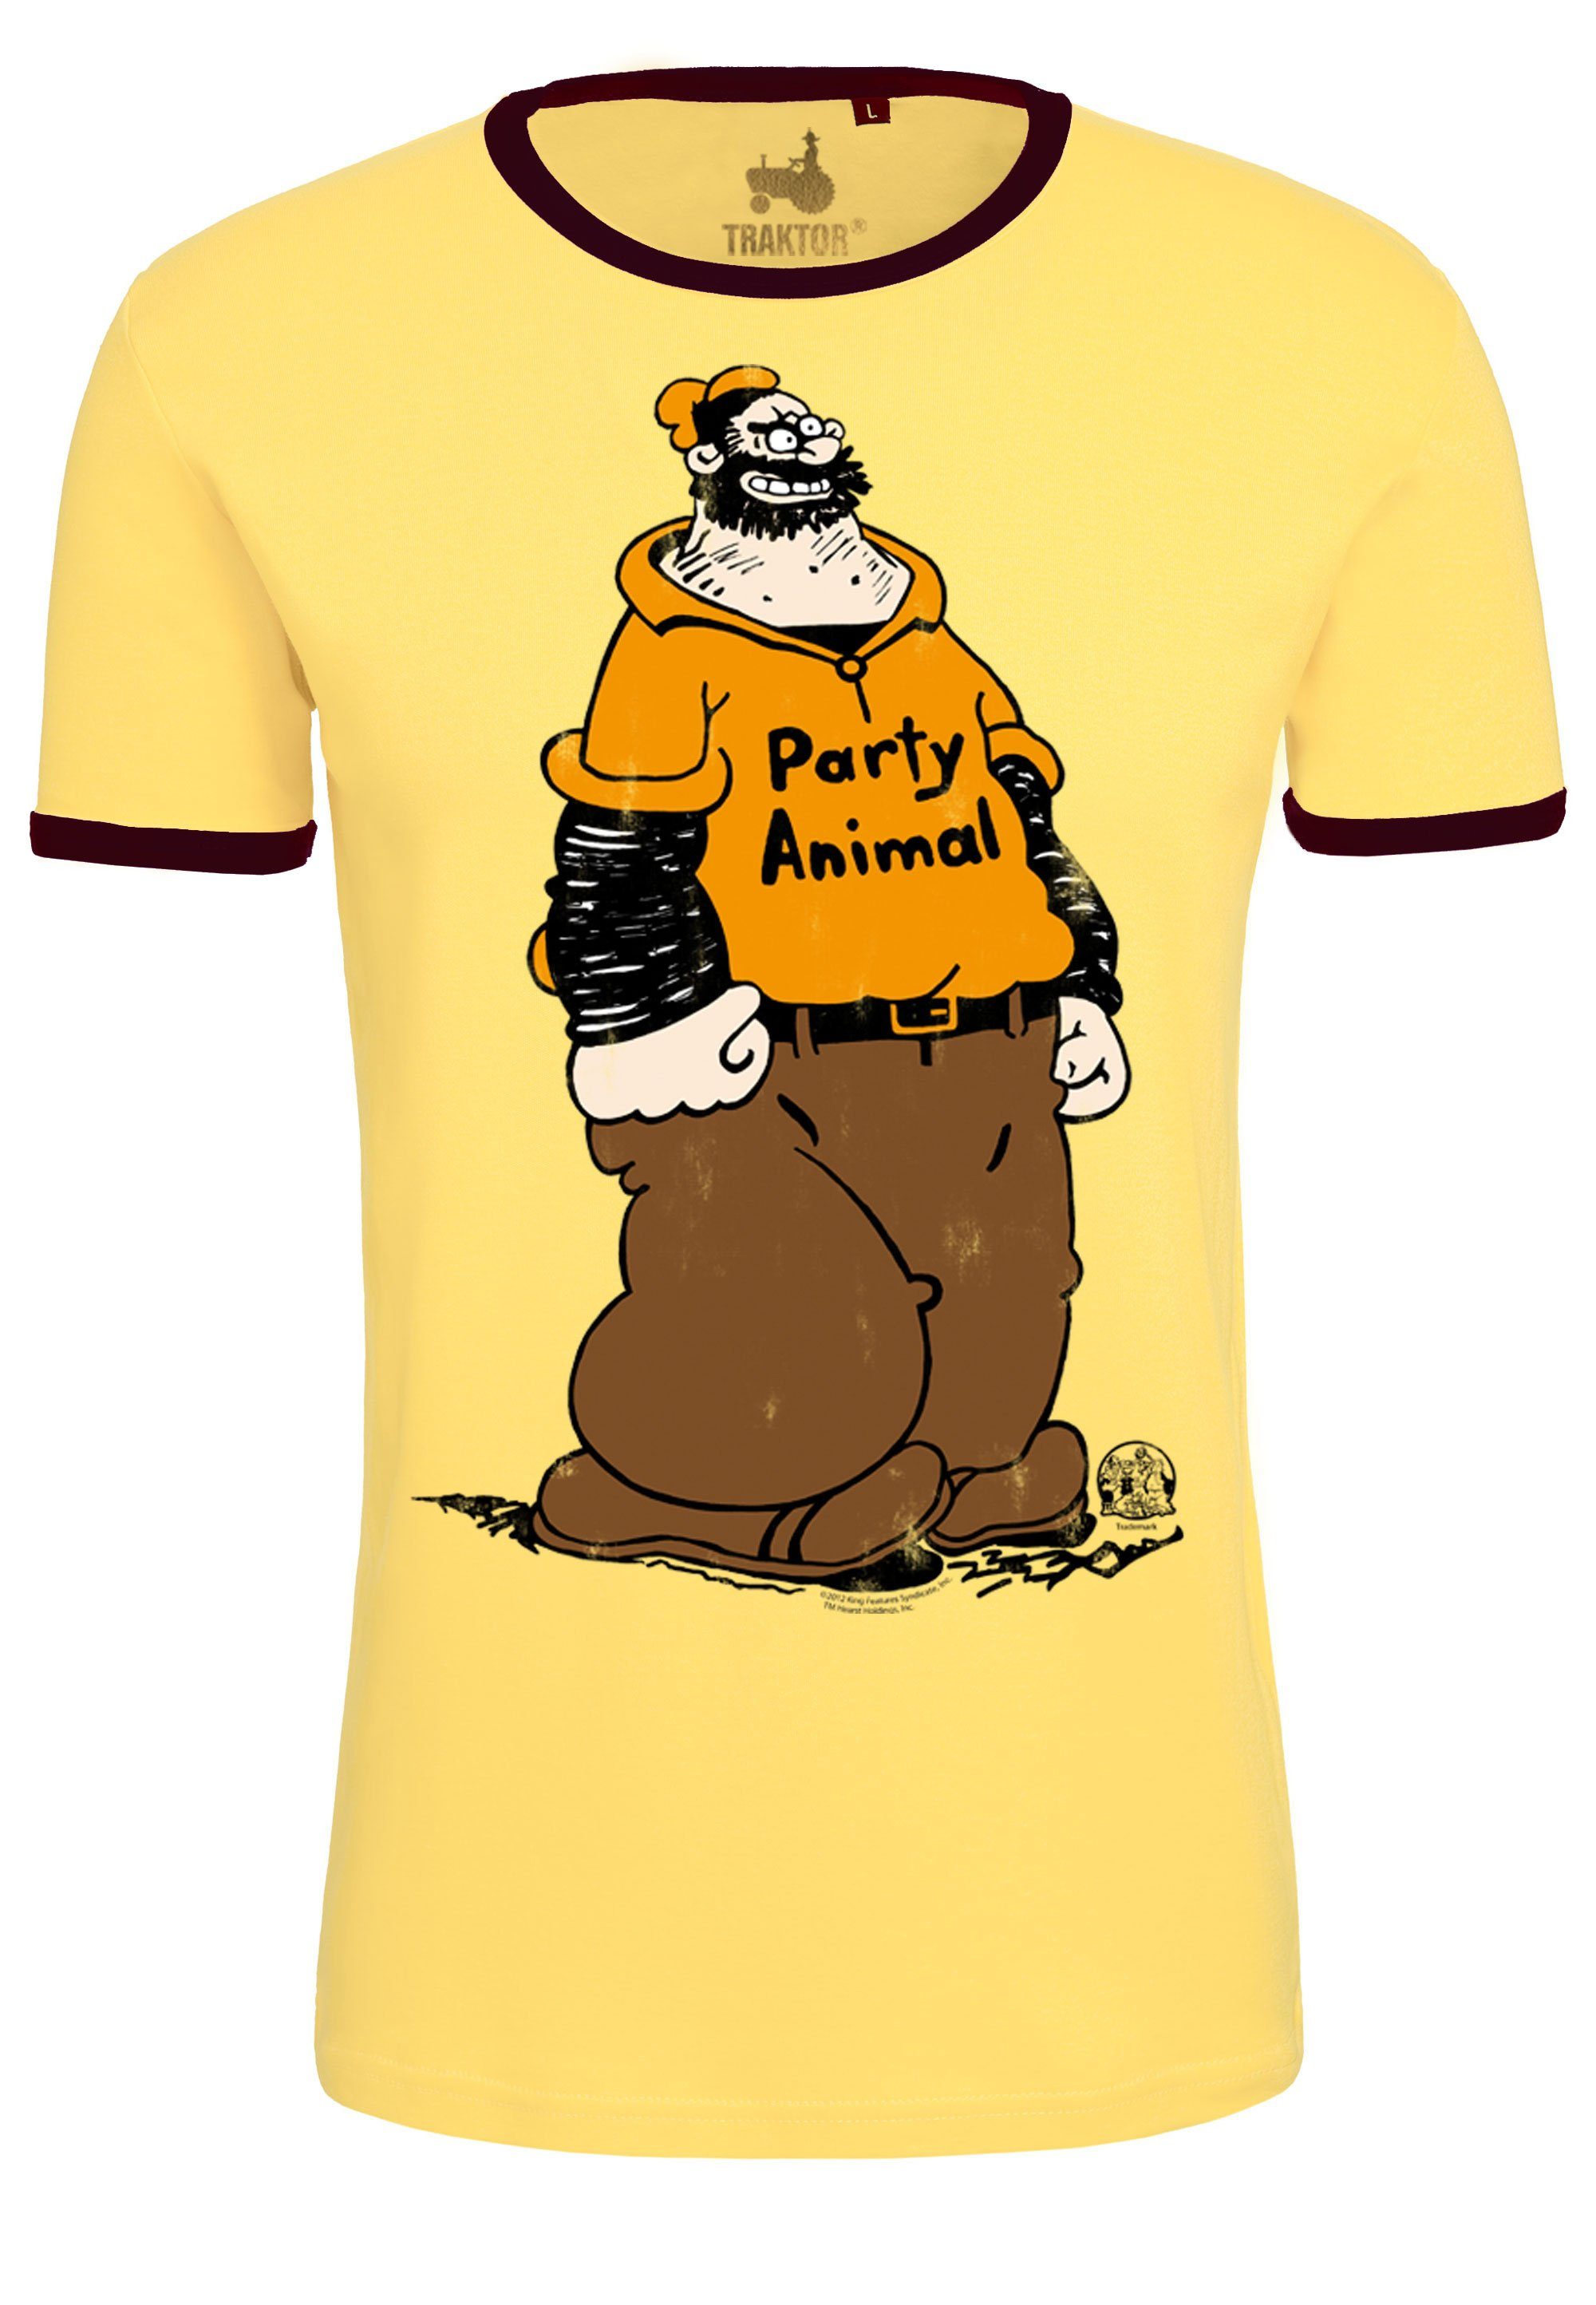 Popeye LOGOSHIRT - mit T-Shirt Brutus trendigem Animal gelb-braun Comic-Print Party